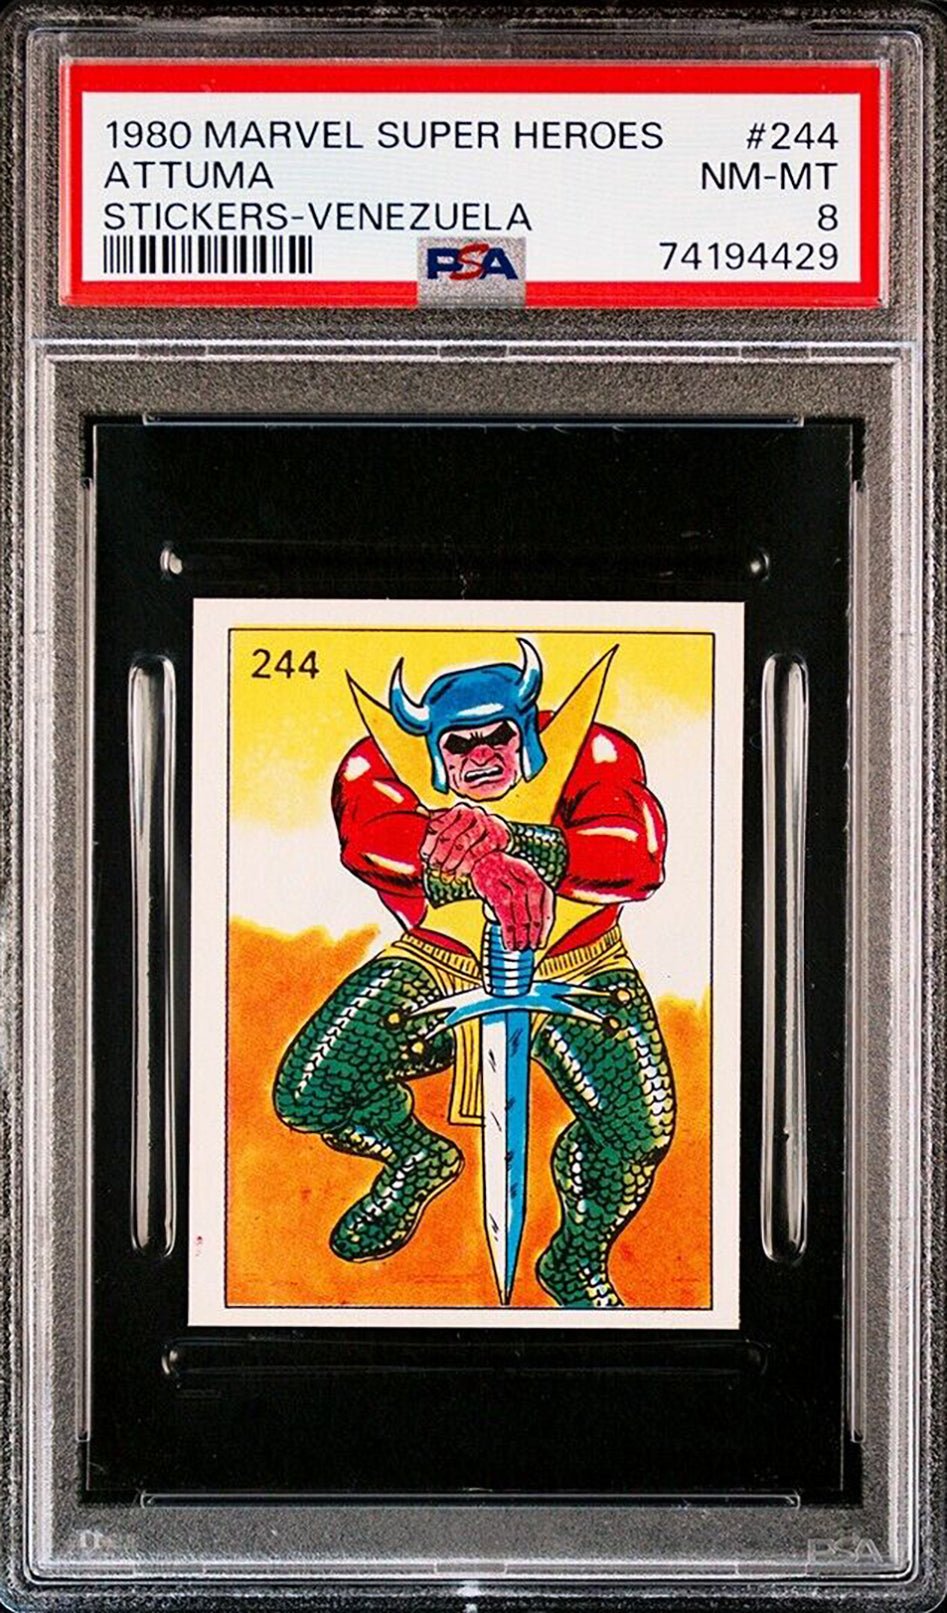 ATTUMA PSA 8 1980 Marvel Super Heroes Sticker Venezuela #244 Marvel Graded Cards Sticker - Hobby Gems